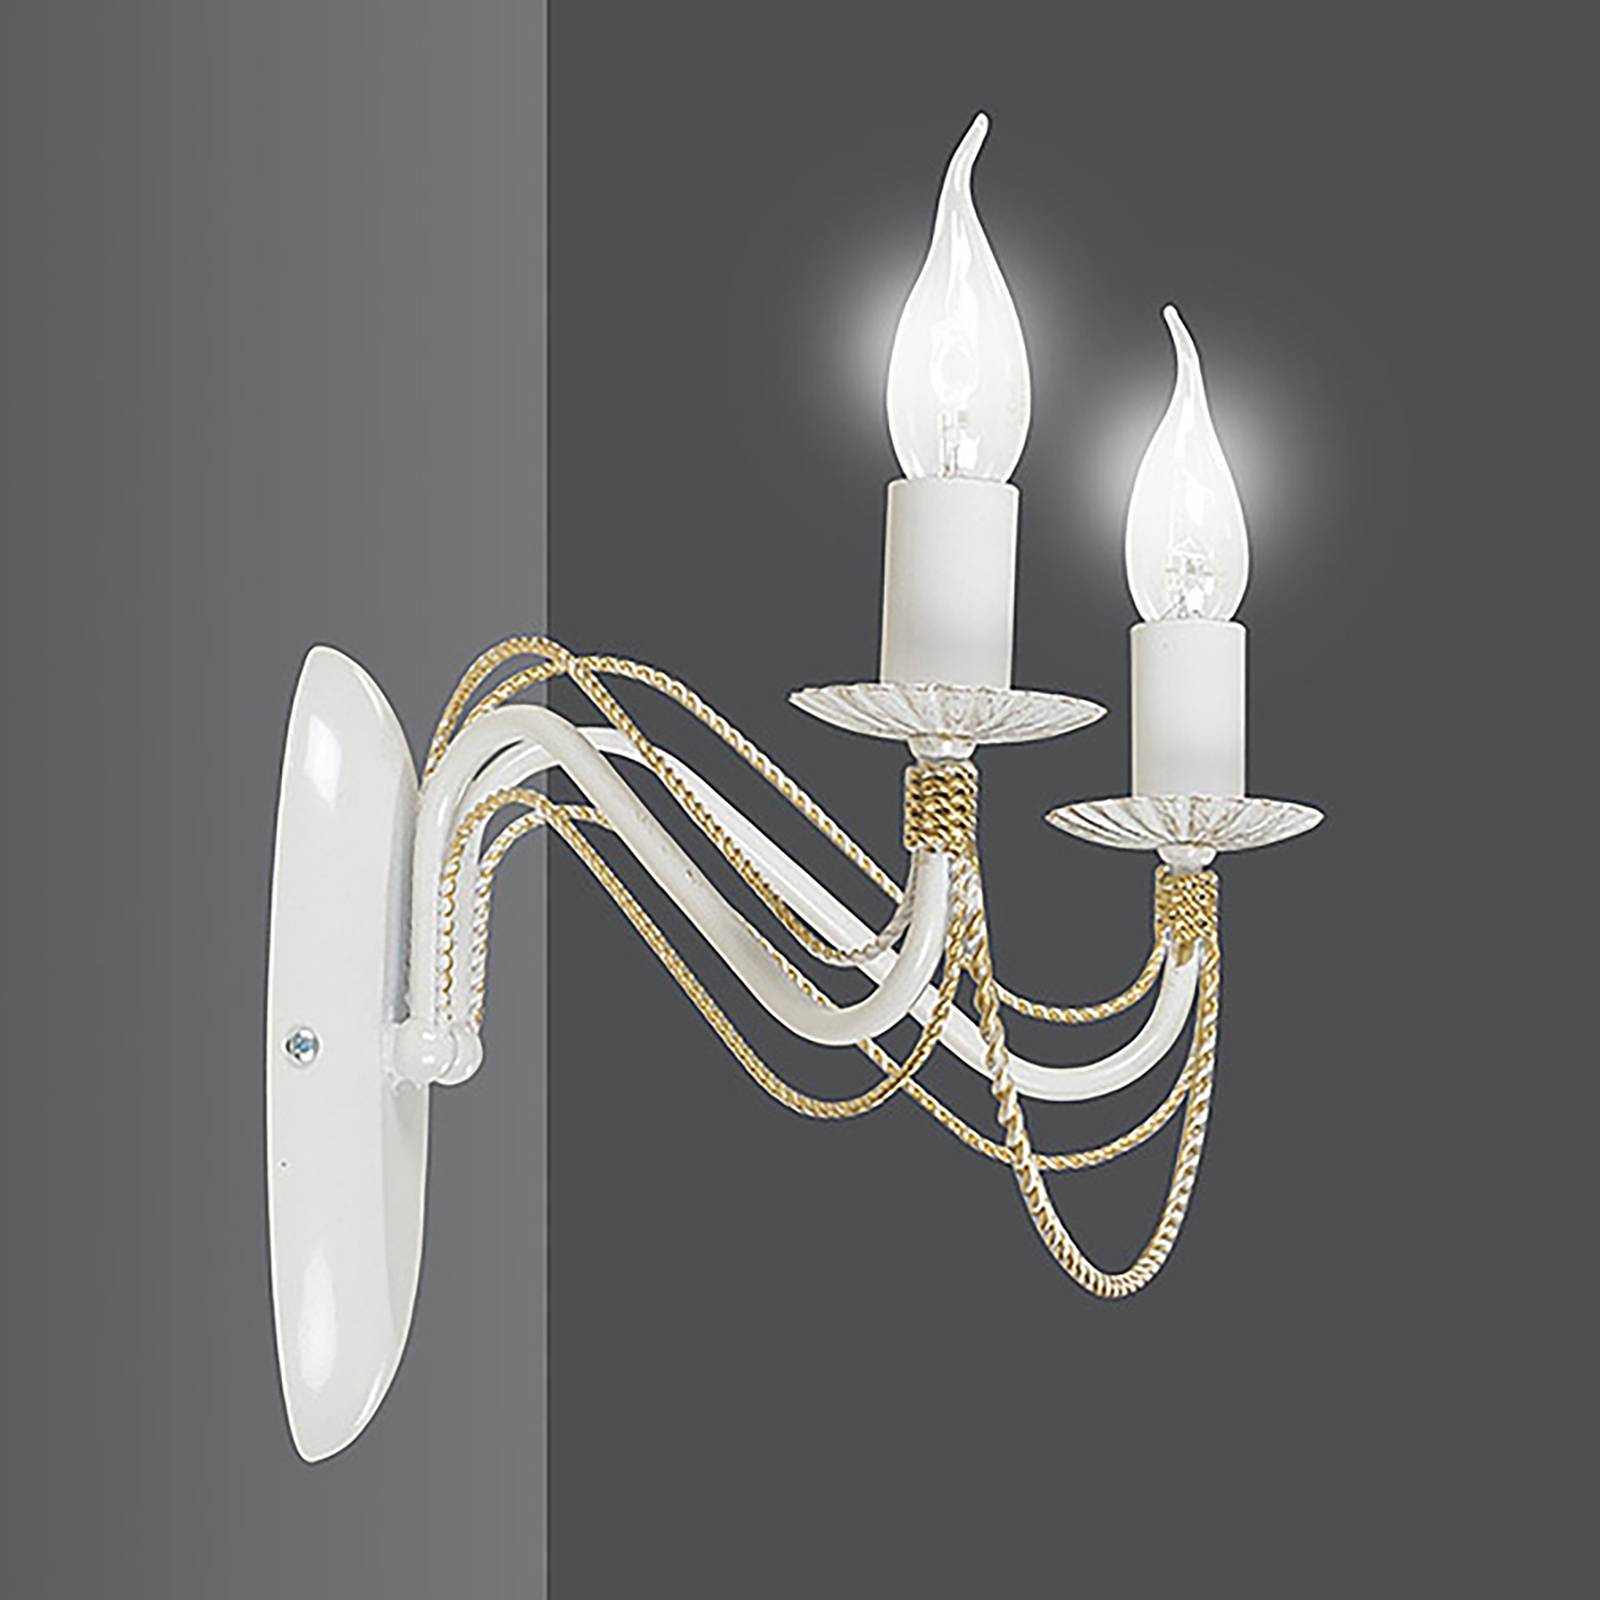 Emibig lighting tori fali lámpa csillár formában, fehér színben